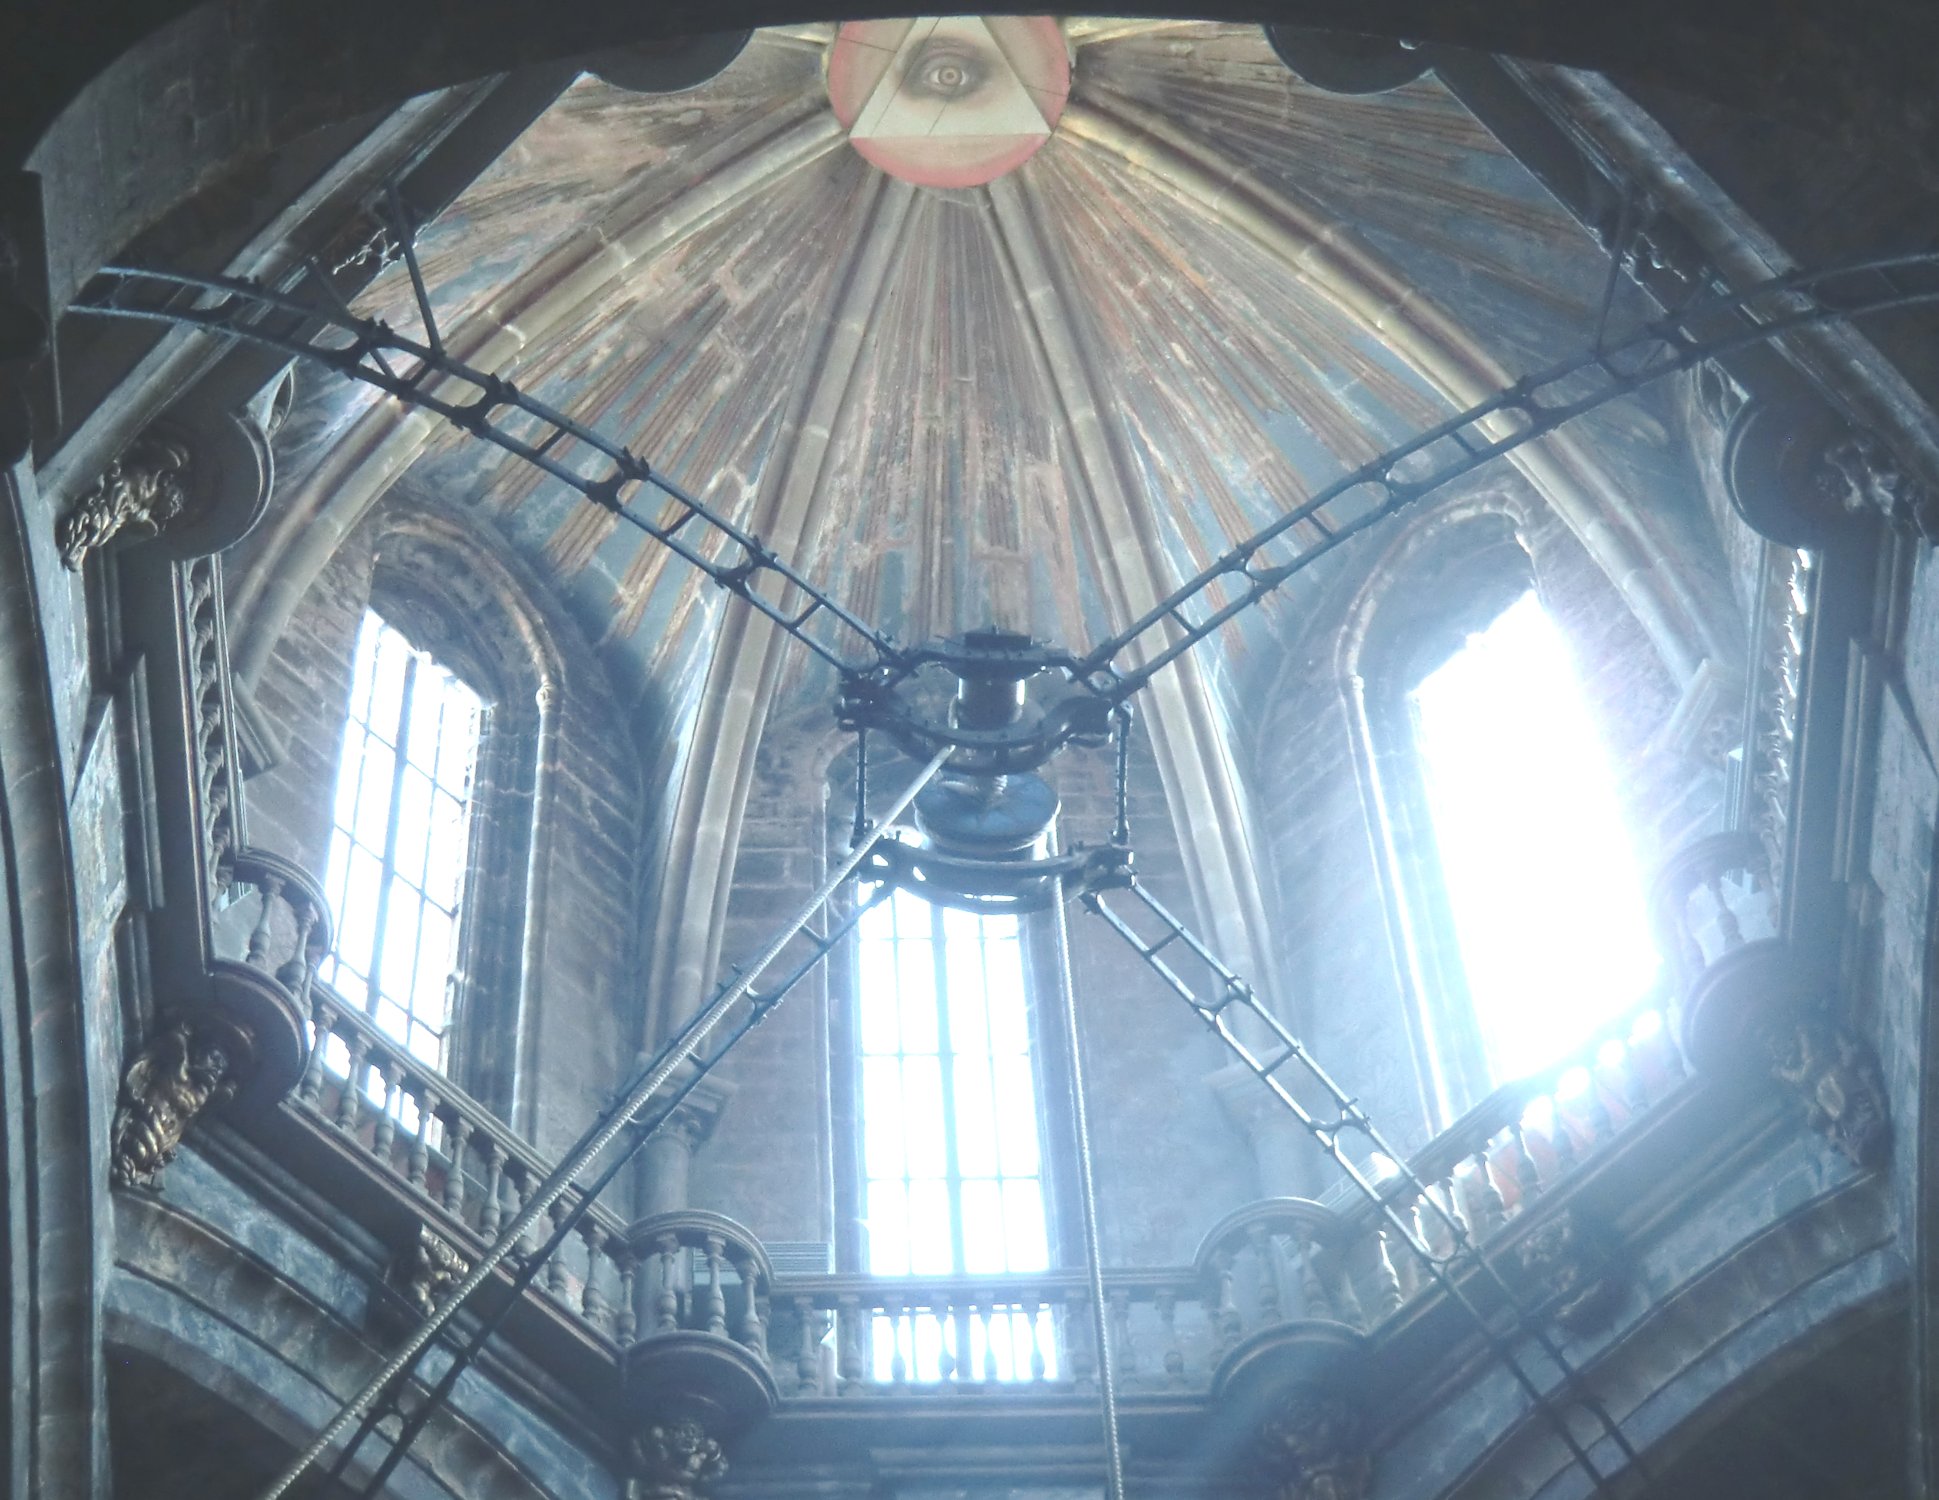 Kuppel der Kathedrale in Santiago de Compostela mit der Mechanik für das Schwenken des Weihrauch-Kessels